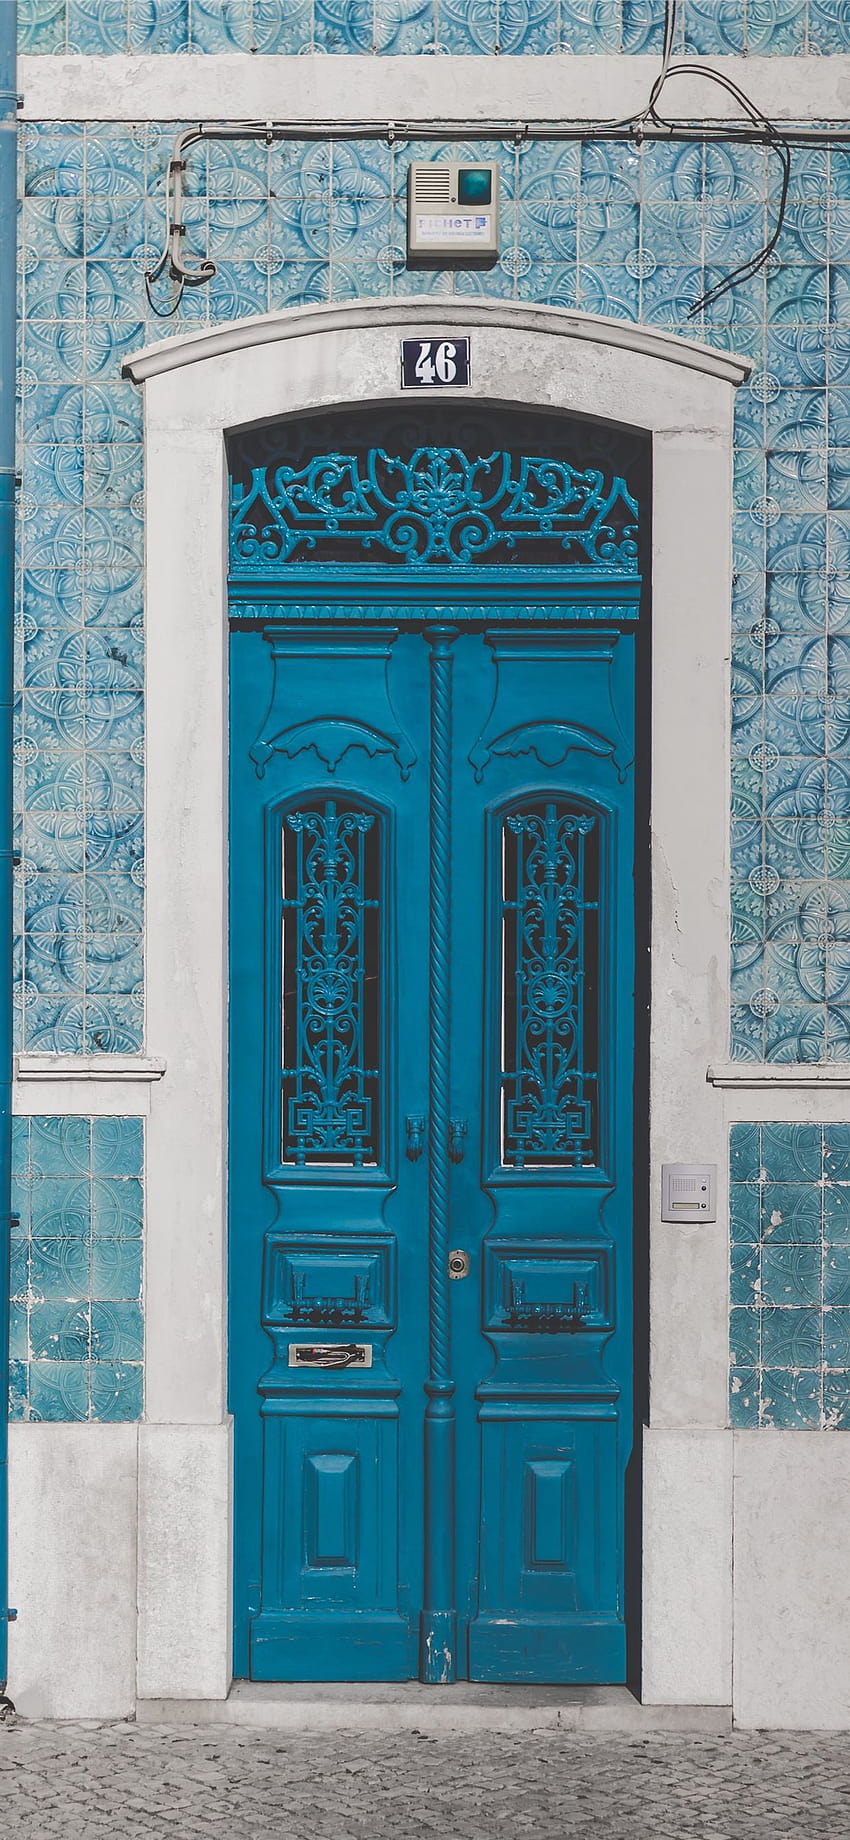 blue wooden door closed with 46 sign iPhone X, closed door HD phone wallpaper